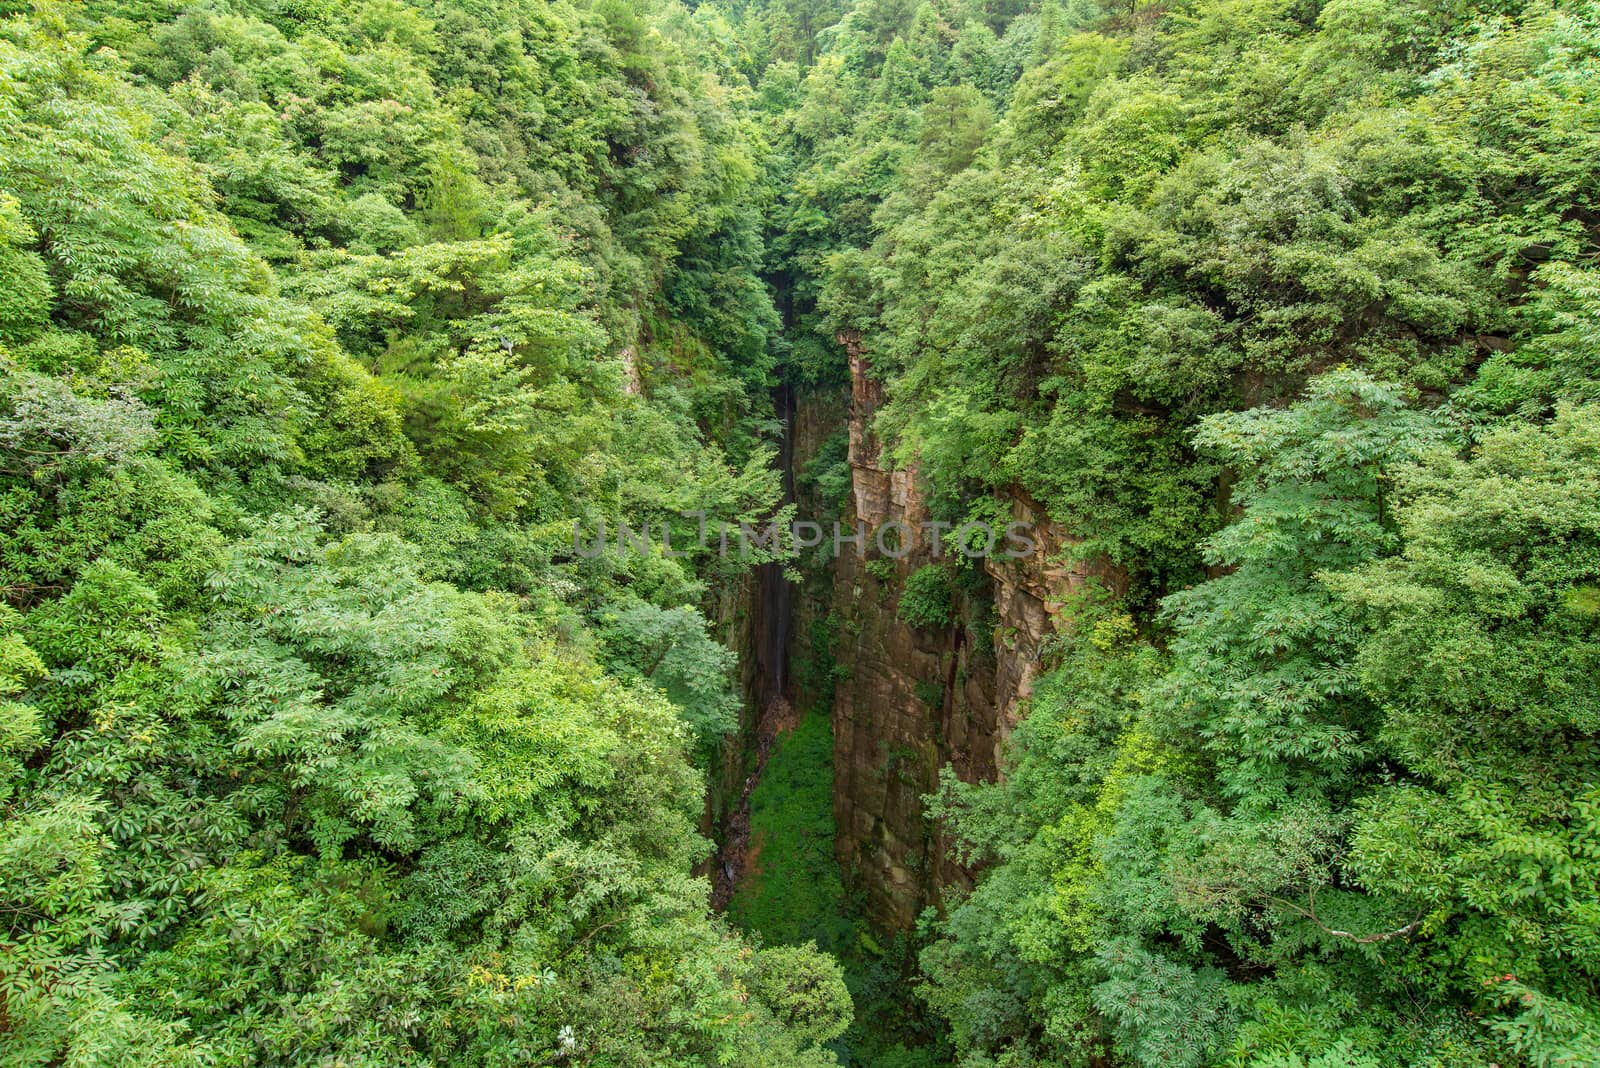 Zhangjiajie National forest park at Wulingyuan Hunan China.